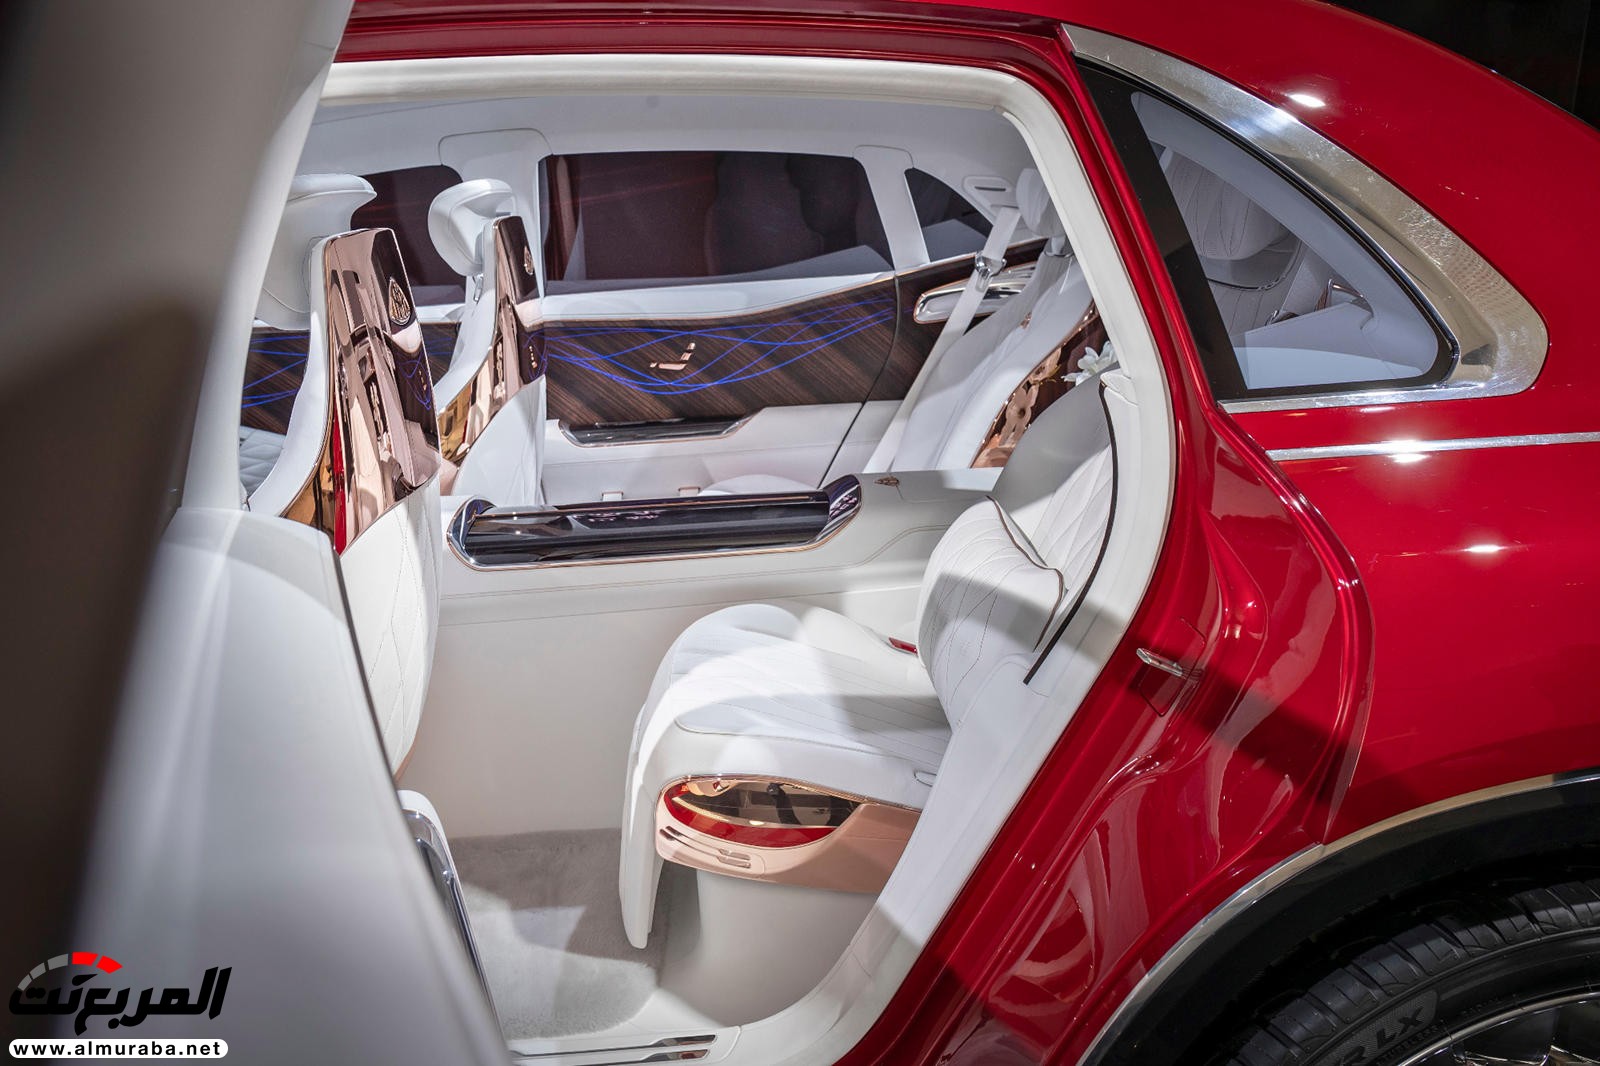 "بالصور" نظرة على مرسيدس مايباخ SUV الاختبارية وفخامتها الداخلية والخارجية 84